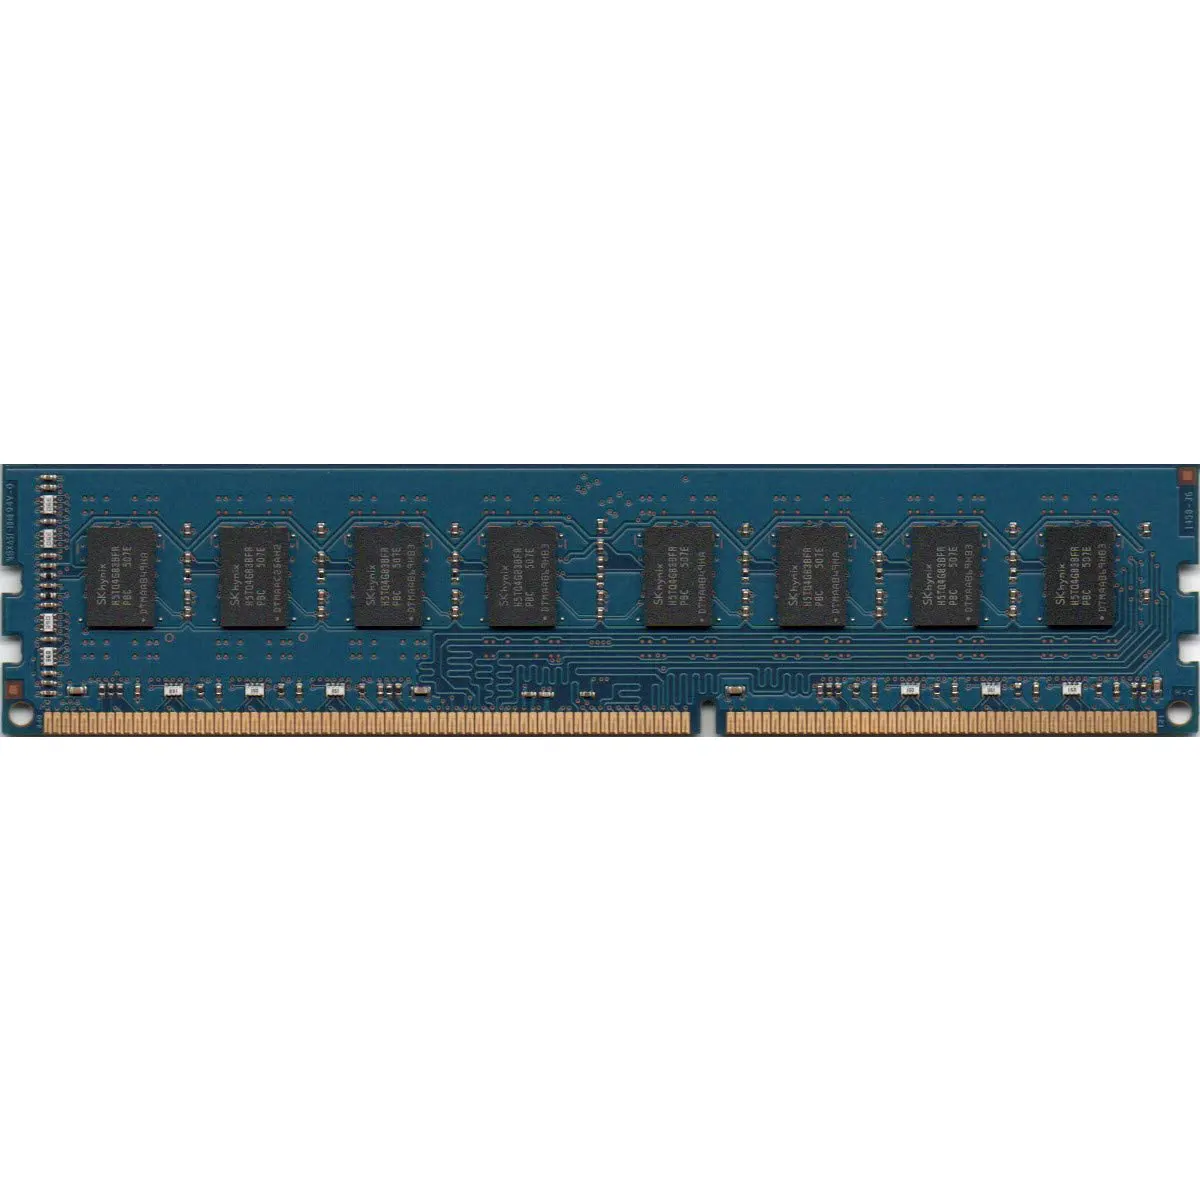 رم کامپیوتر هاینیکس Hynix 8GB DDR3 1600 HMT41GU6BFR8C